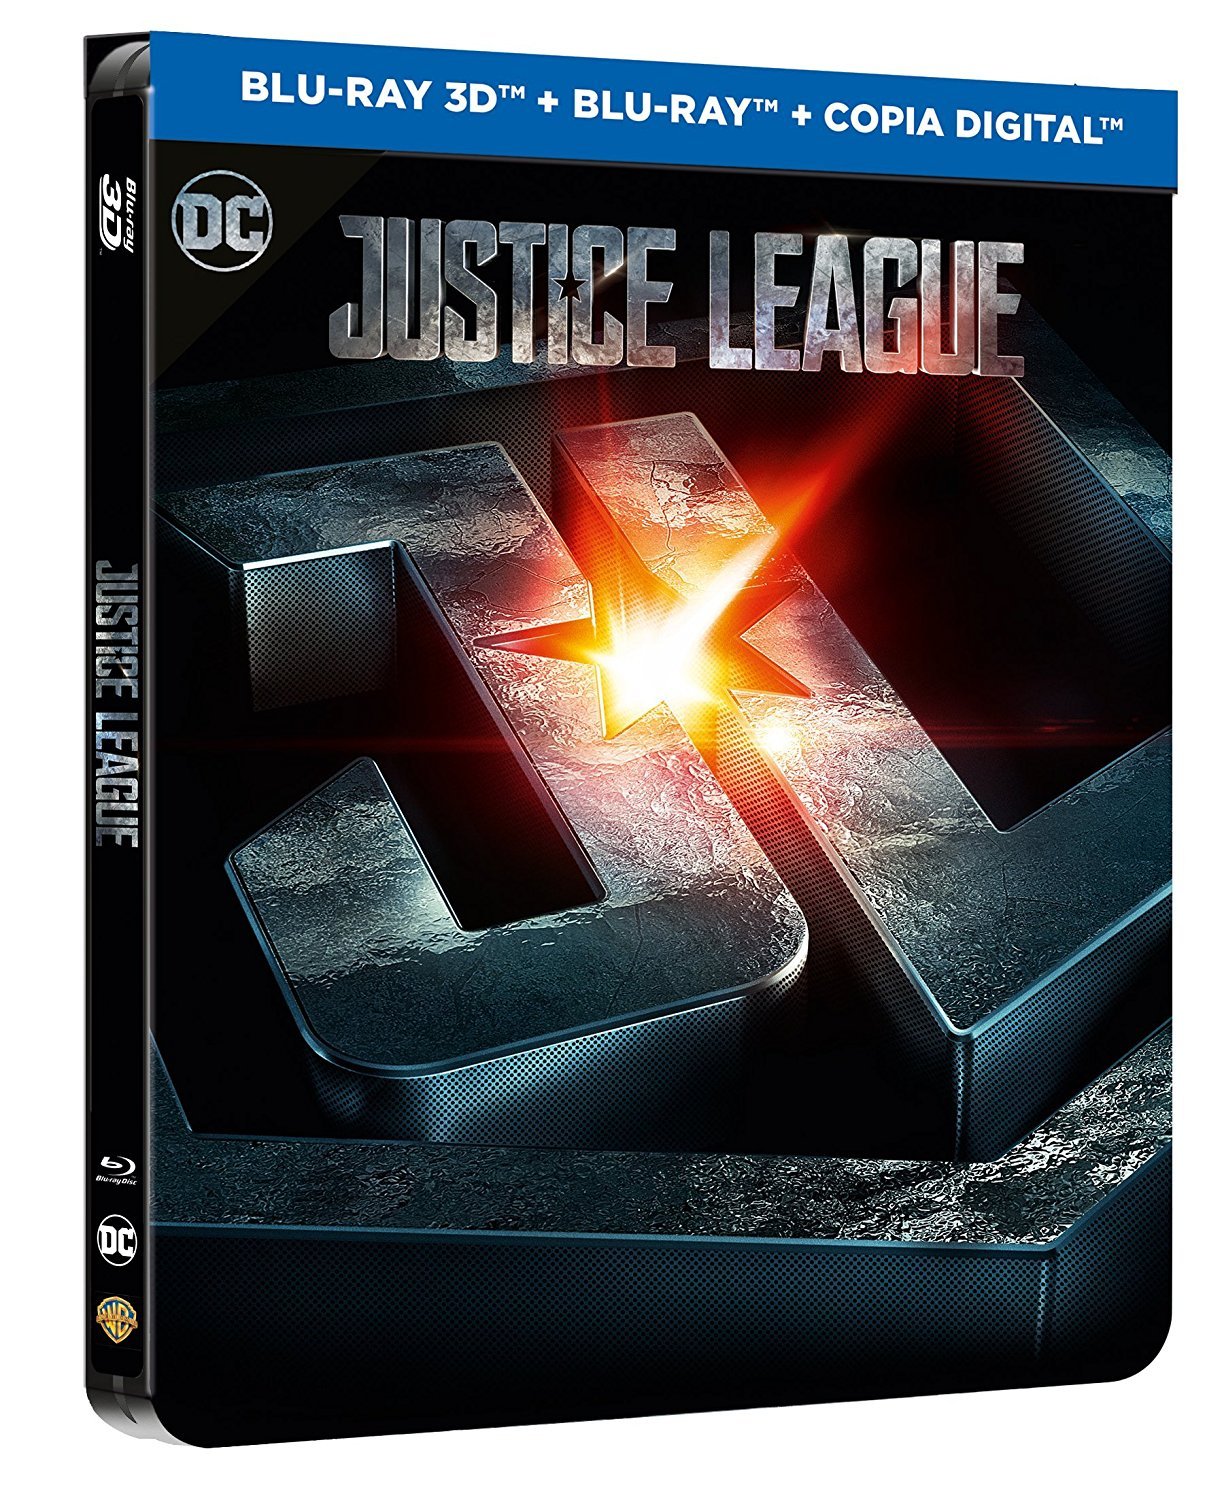 'Liga de la Justicia' llegará con 7 ediciones físicas el 16 de marzo • En tu pantalla